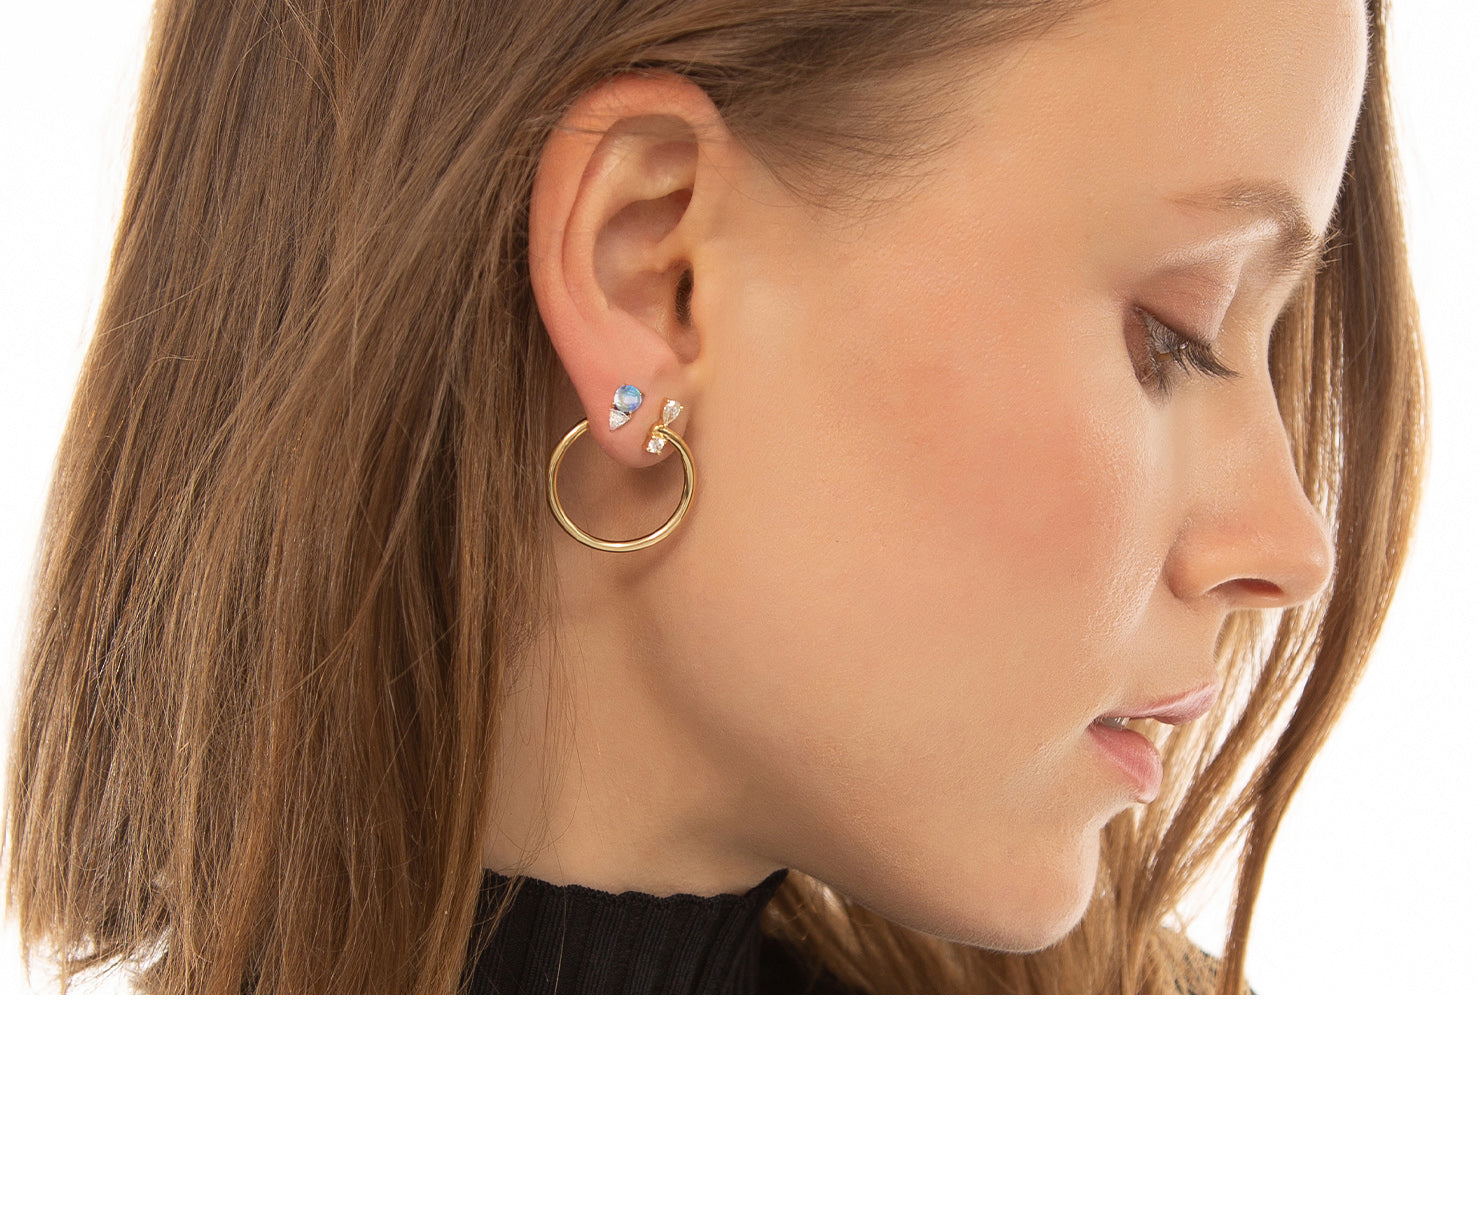 Gold Infinity Earrings, Gold Stud Earrings, Gold Earrings, Stud Earrings,  Minimalist Earrings, 14k Gold Earrings, Gold Earring Studs - Etsy